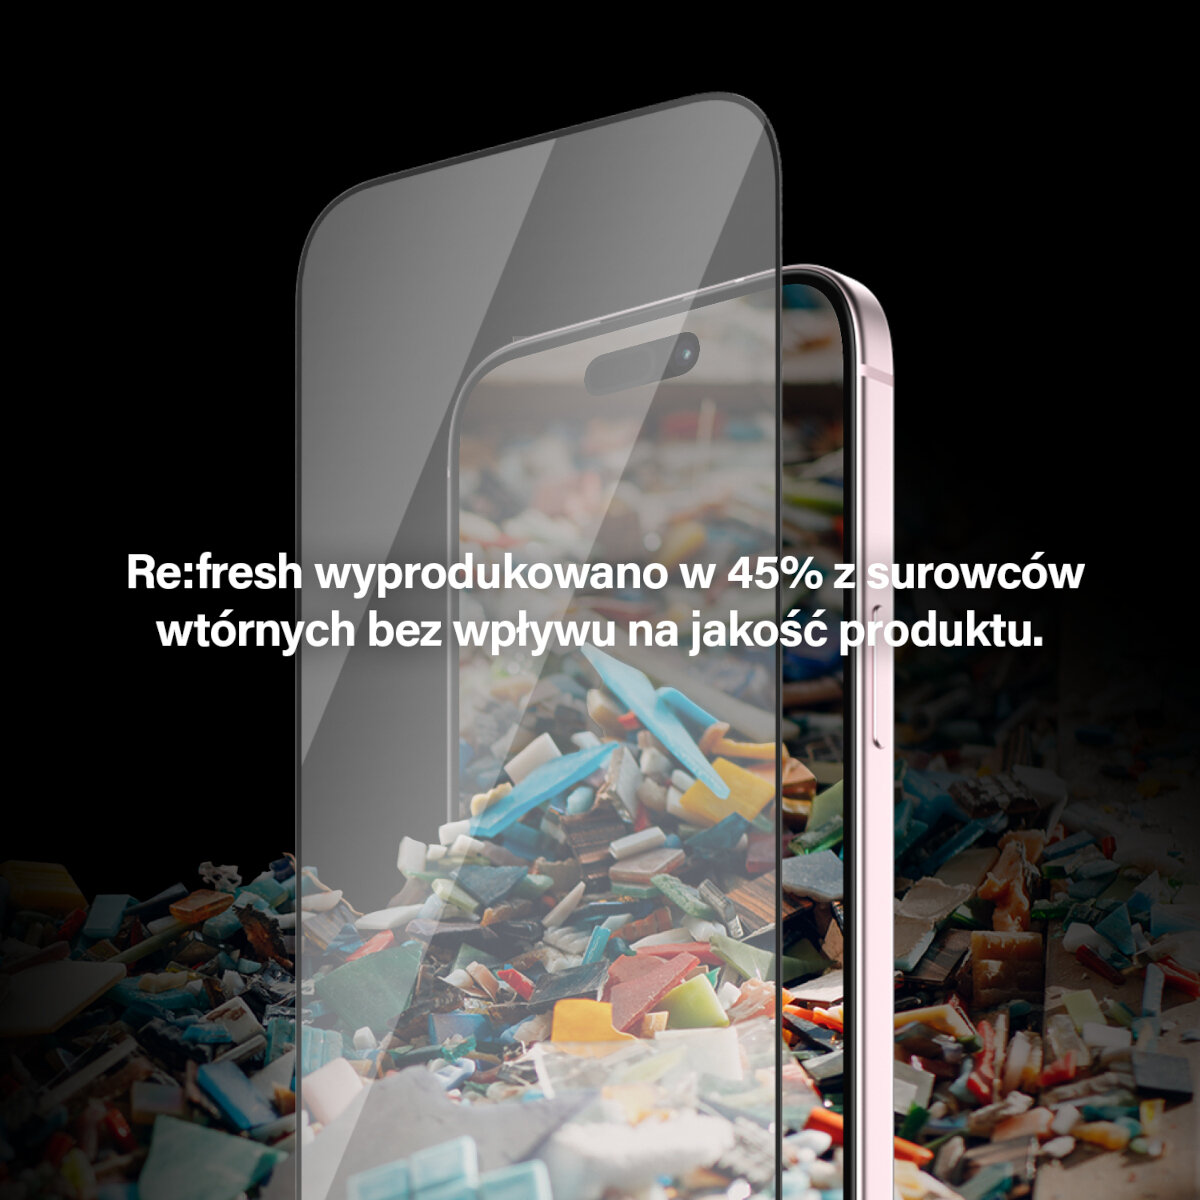 Szkło ochronne PanzerGlass Re:fresh Glass iPhone 15 Pro Max widoczny telefon z przyłożonym szkłem na tle śmieci